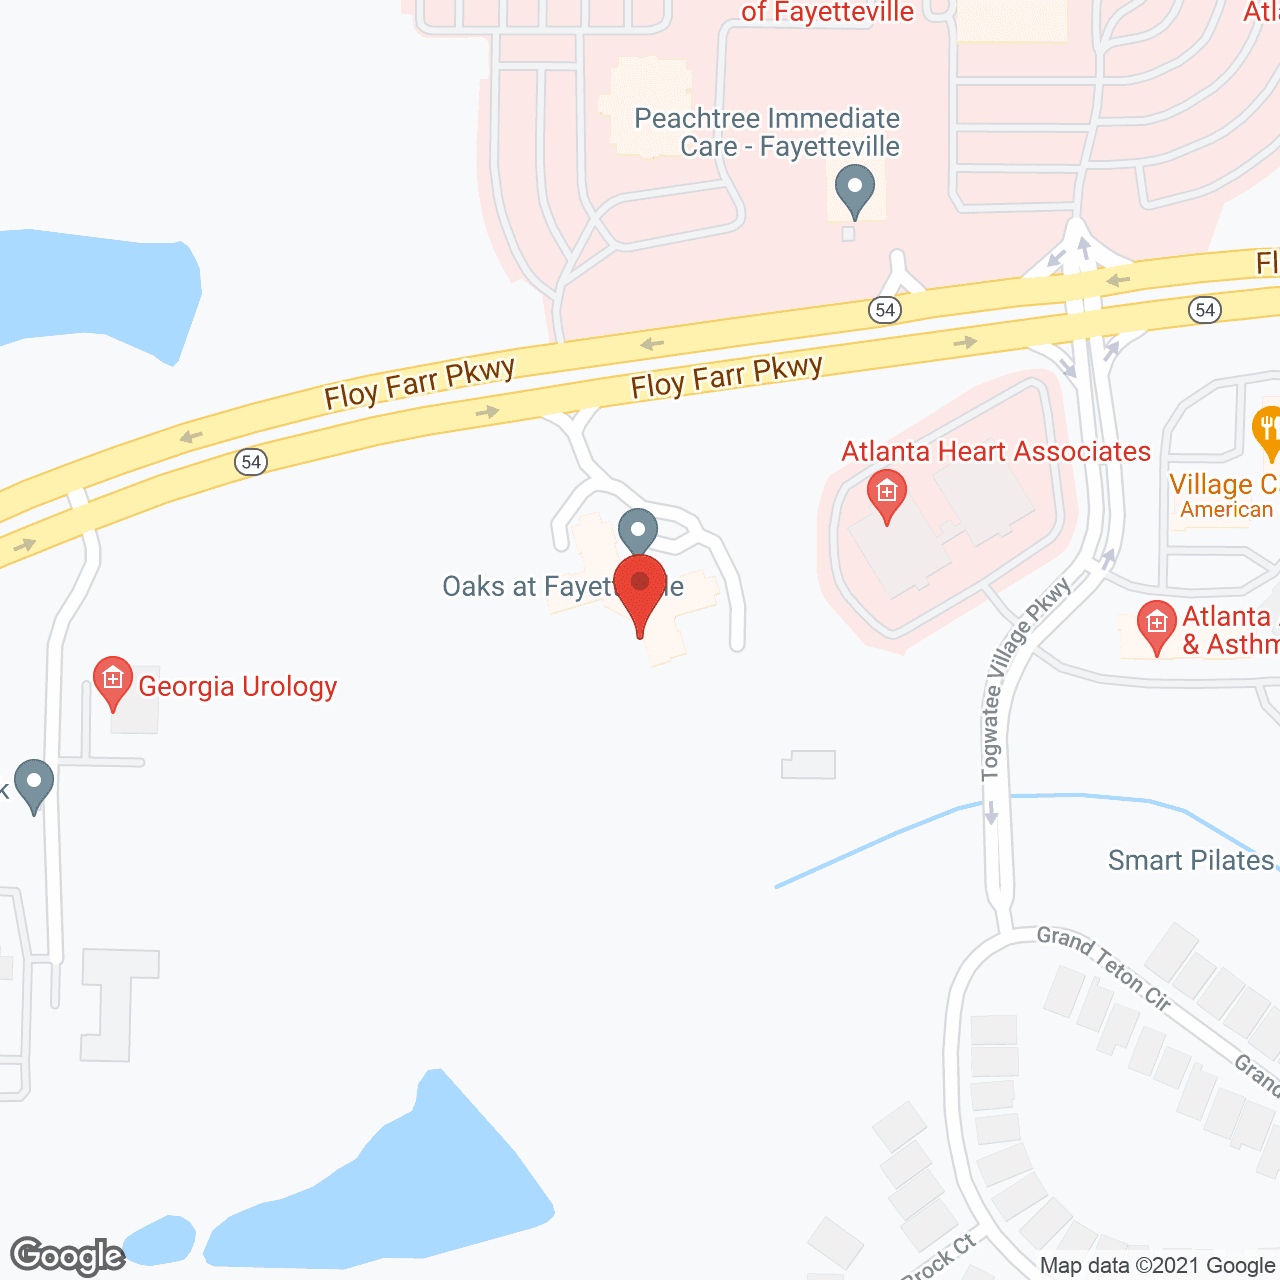 Oaks at Fayetteville in google map